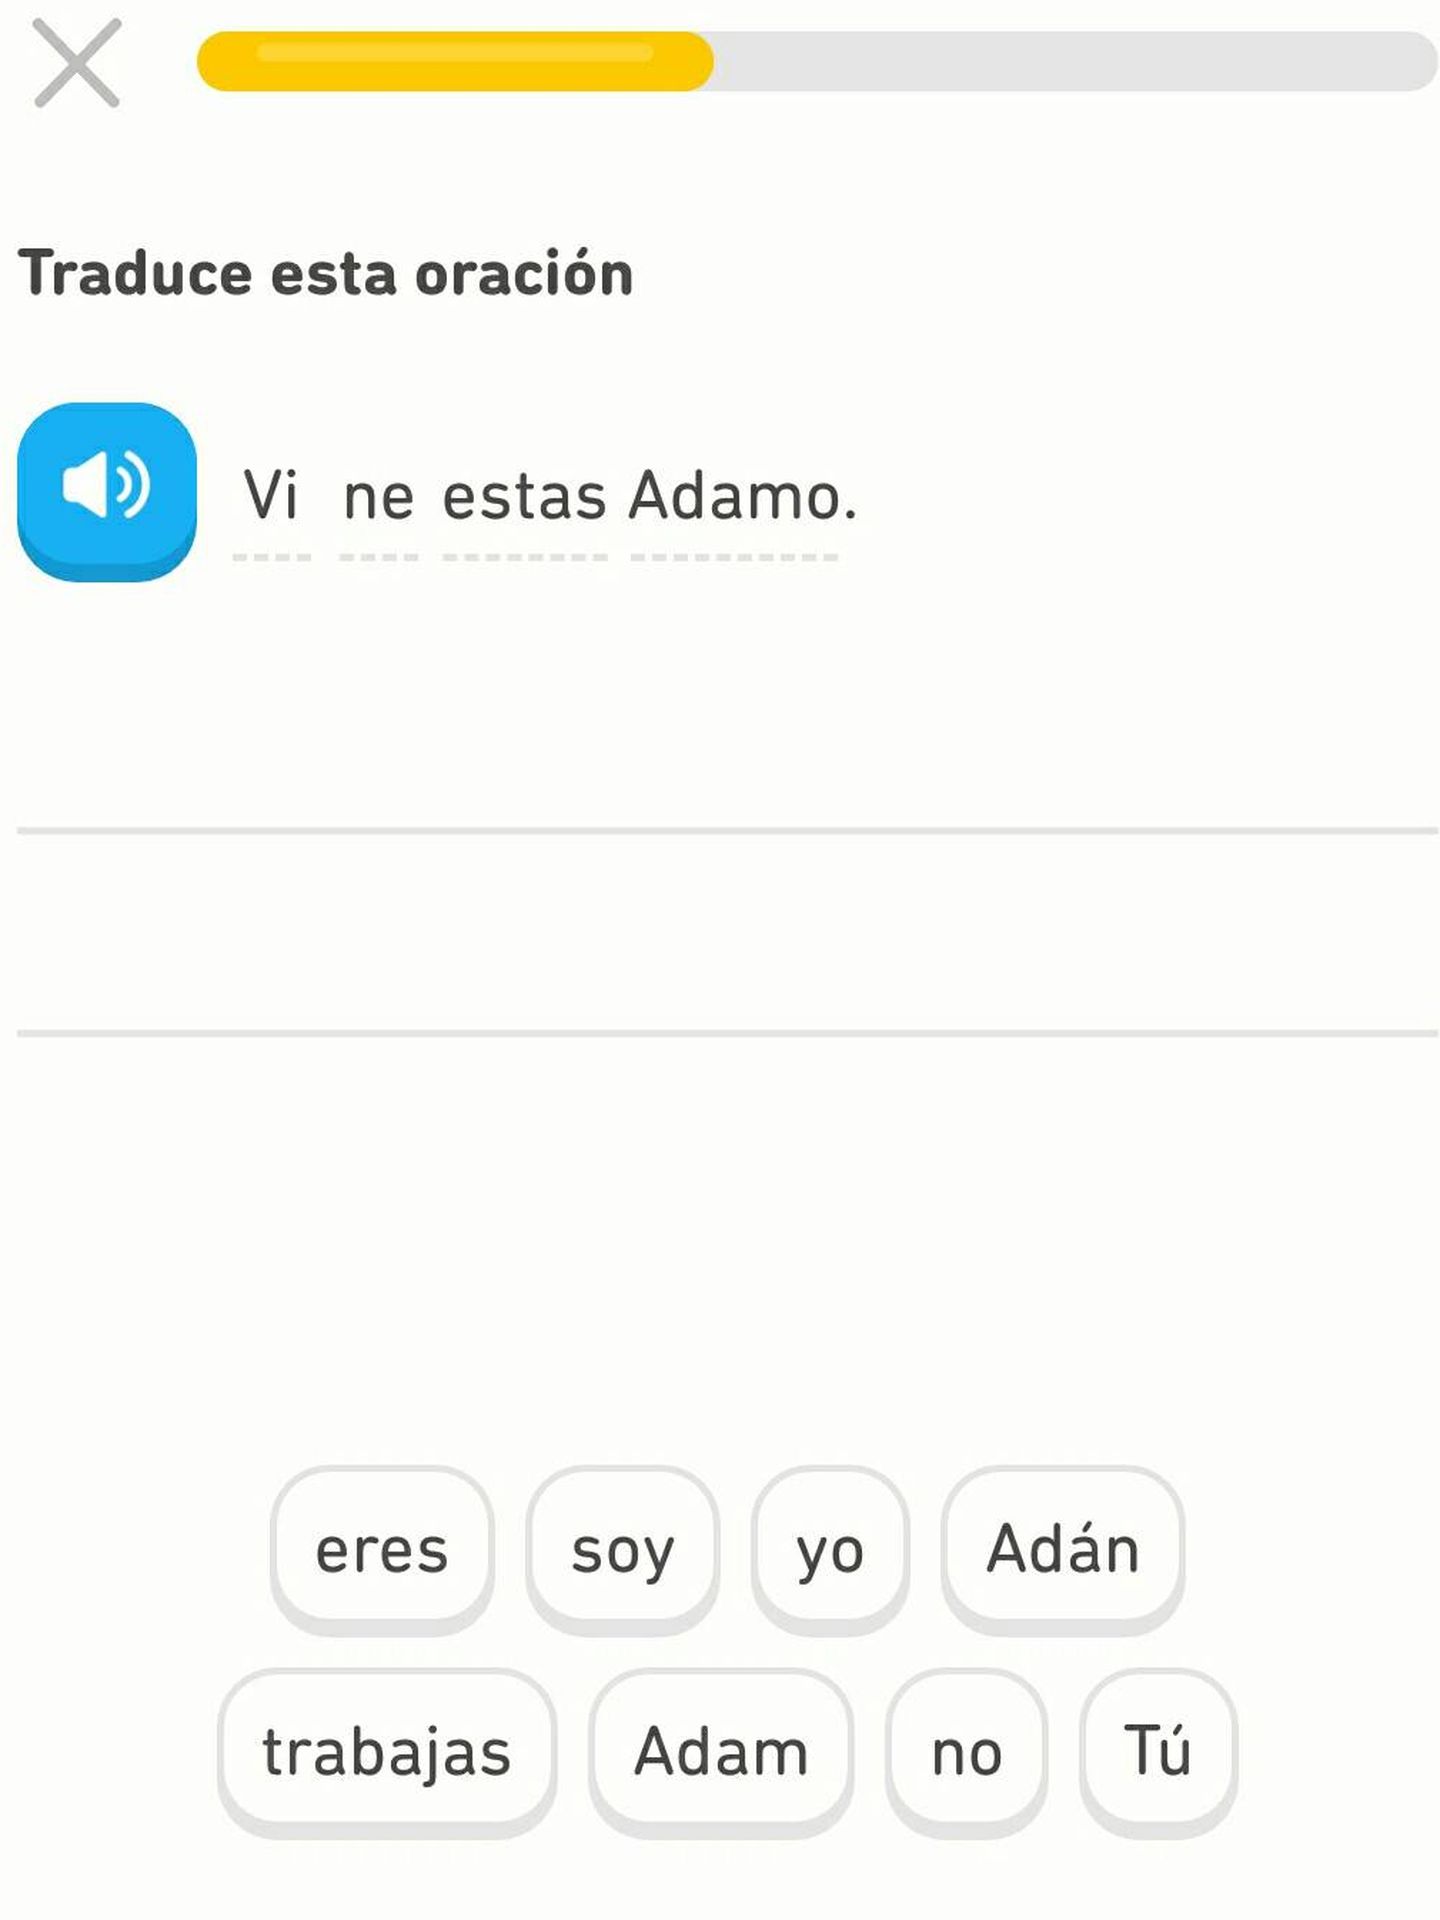 Empezando a aprender esperanto